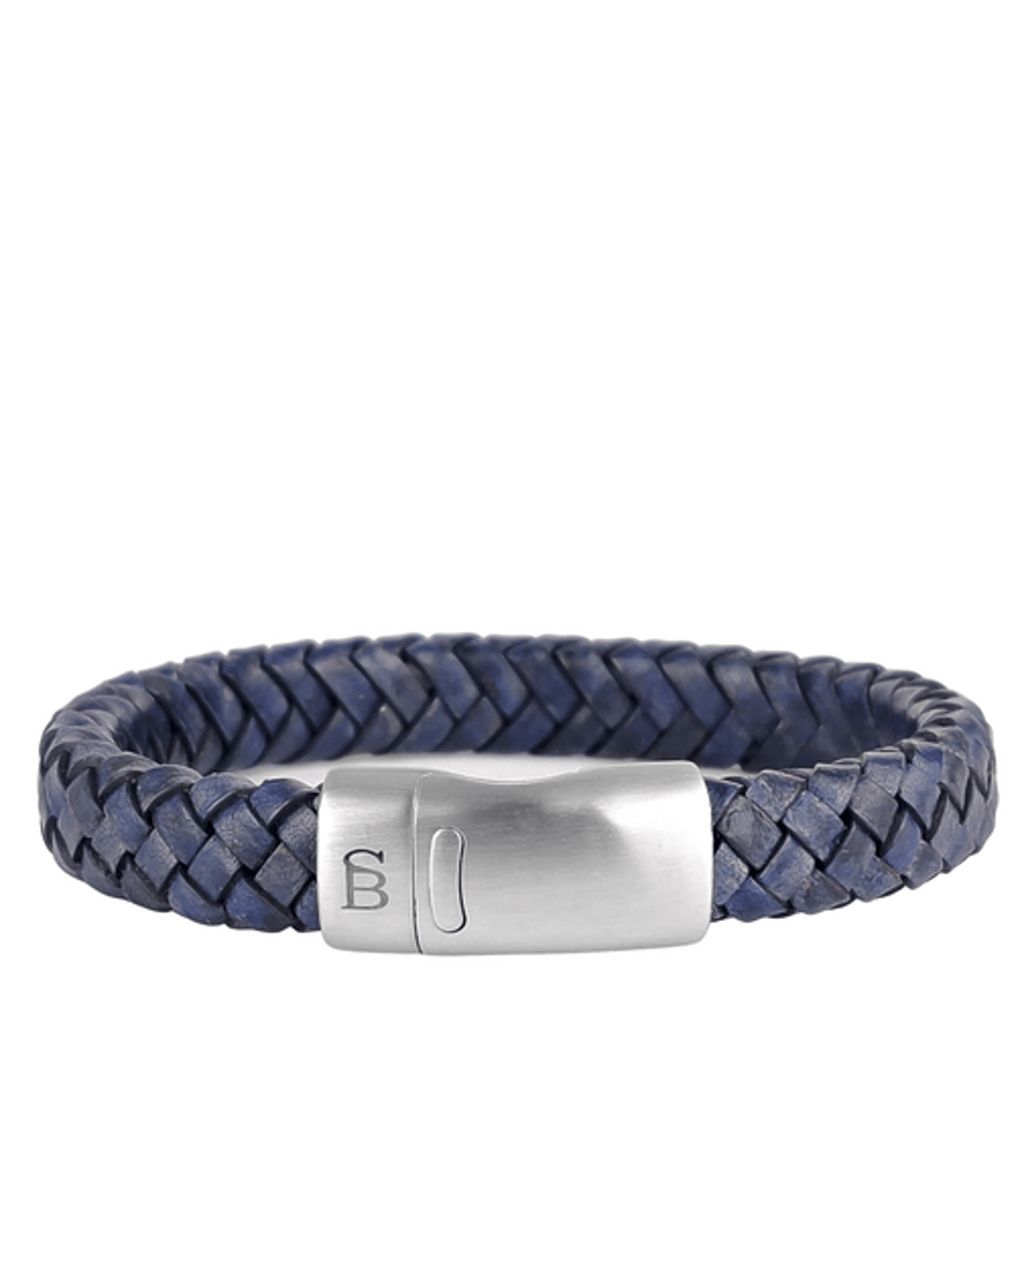 Steel & Barnett Armband Donker blauw 074908-001-L